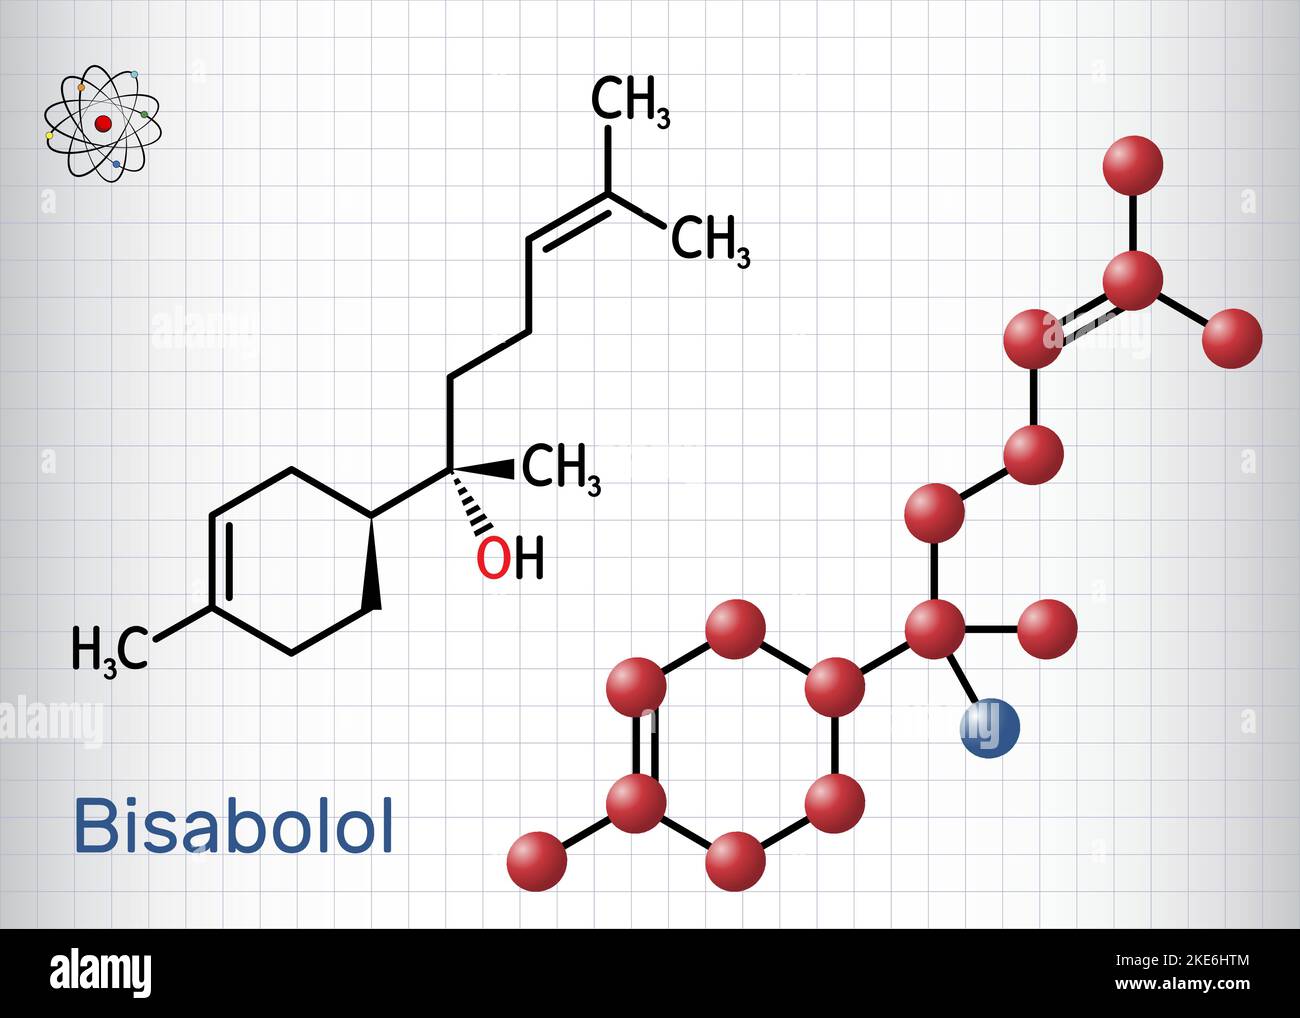 Bisabolol, alpha-Bisabolol, levomenol molecule. It is natural sesquiterpene alcohol, used in fragrances. Structural chemical formula, molecule model. Stock Vector